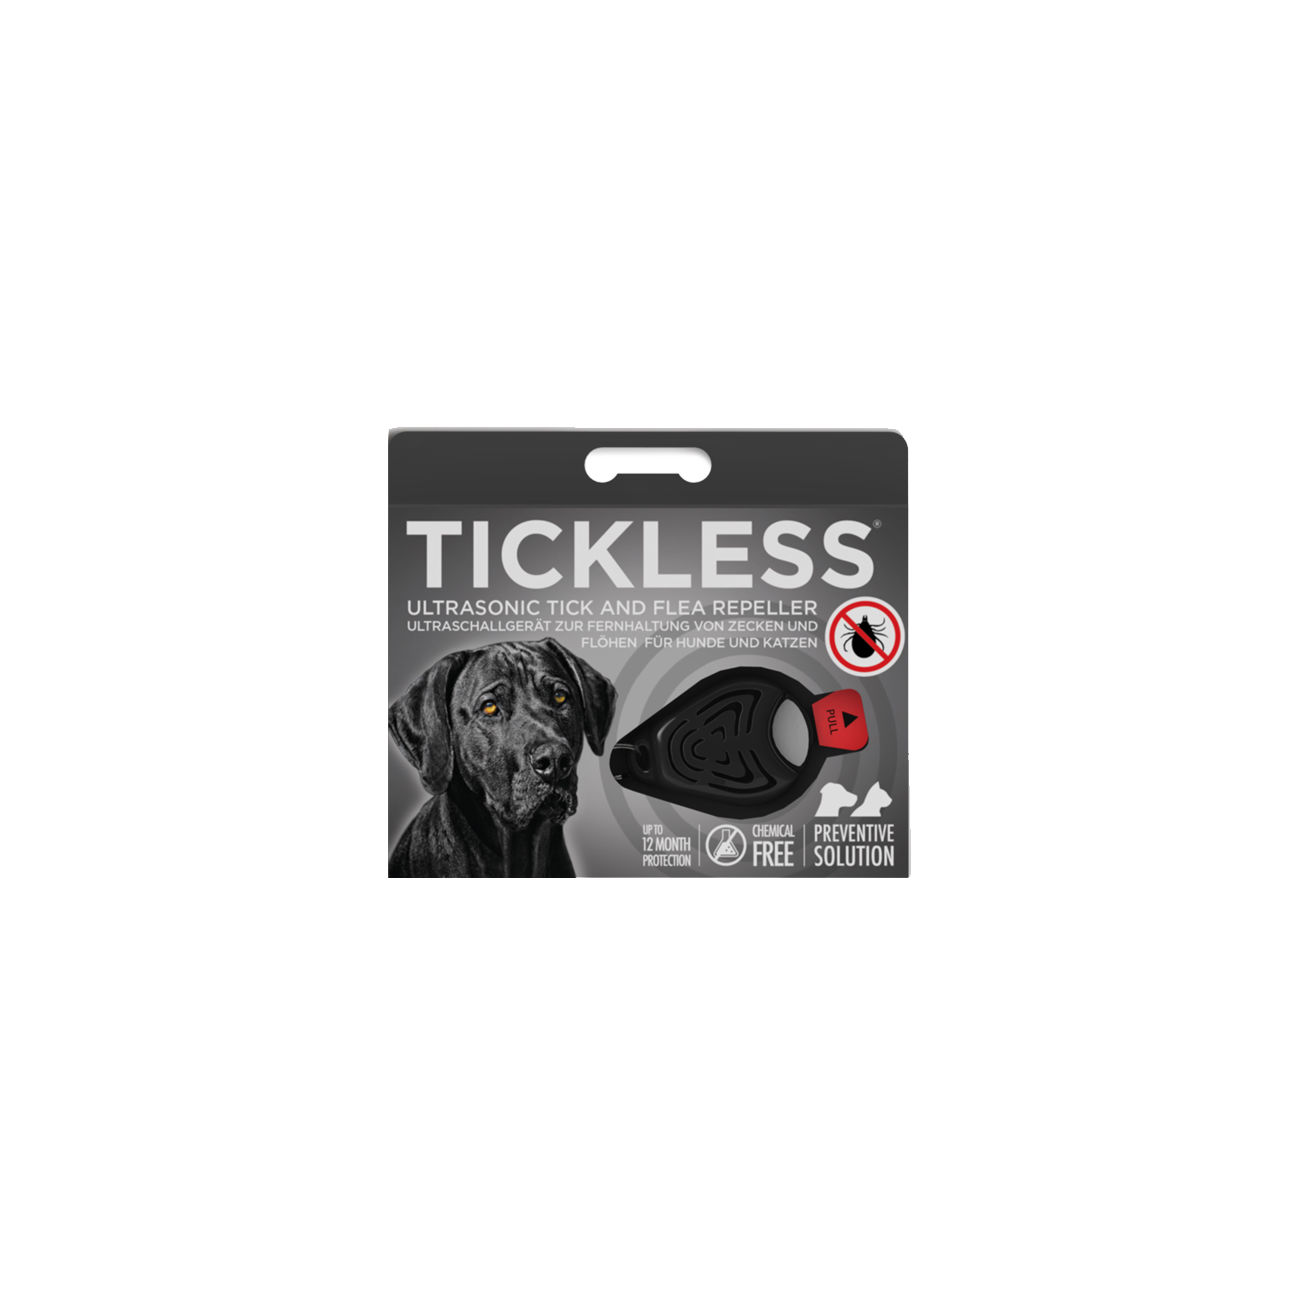 Tickless Pet Ultraschall Abwehrgerät gegen Zecken und Flöhe